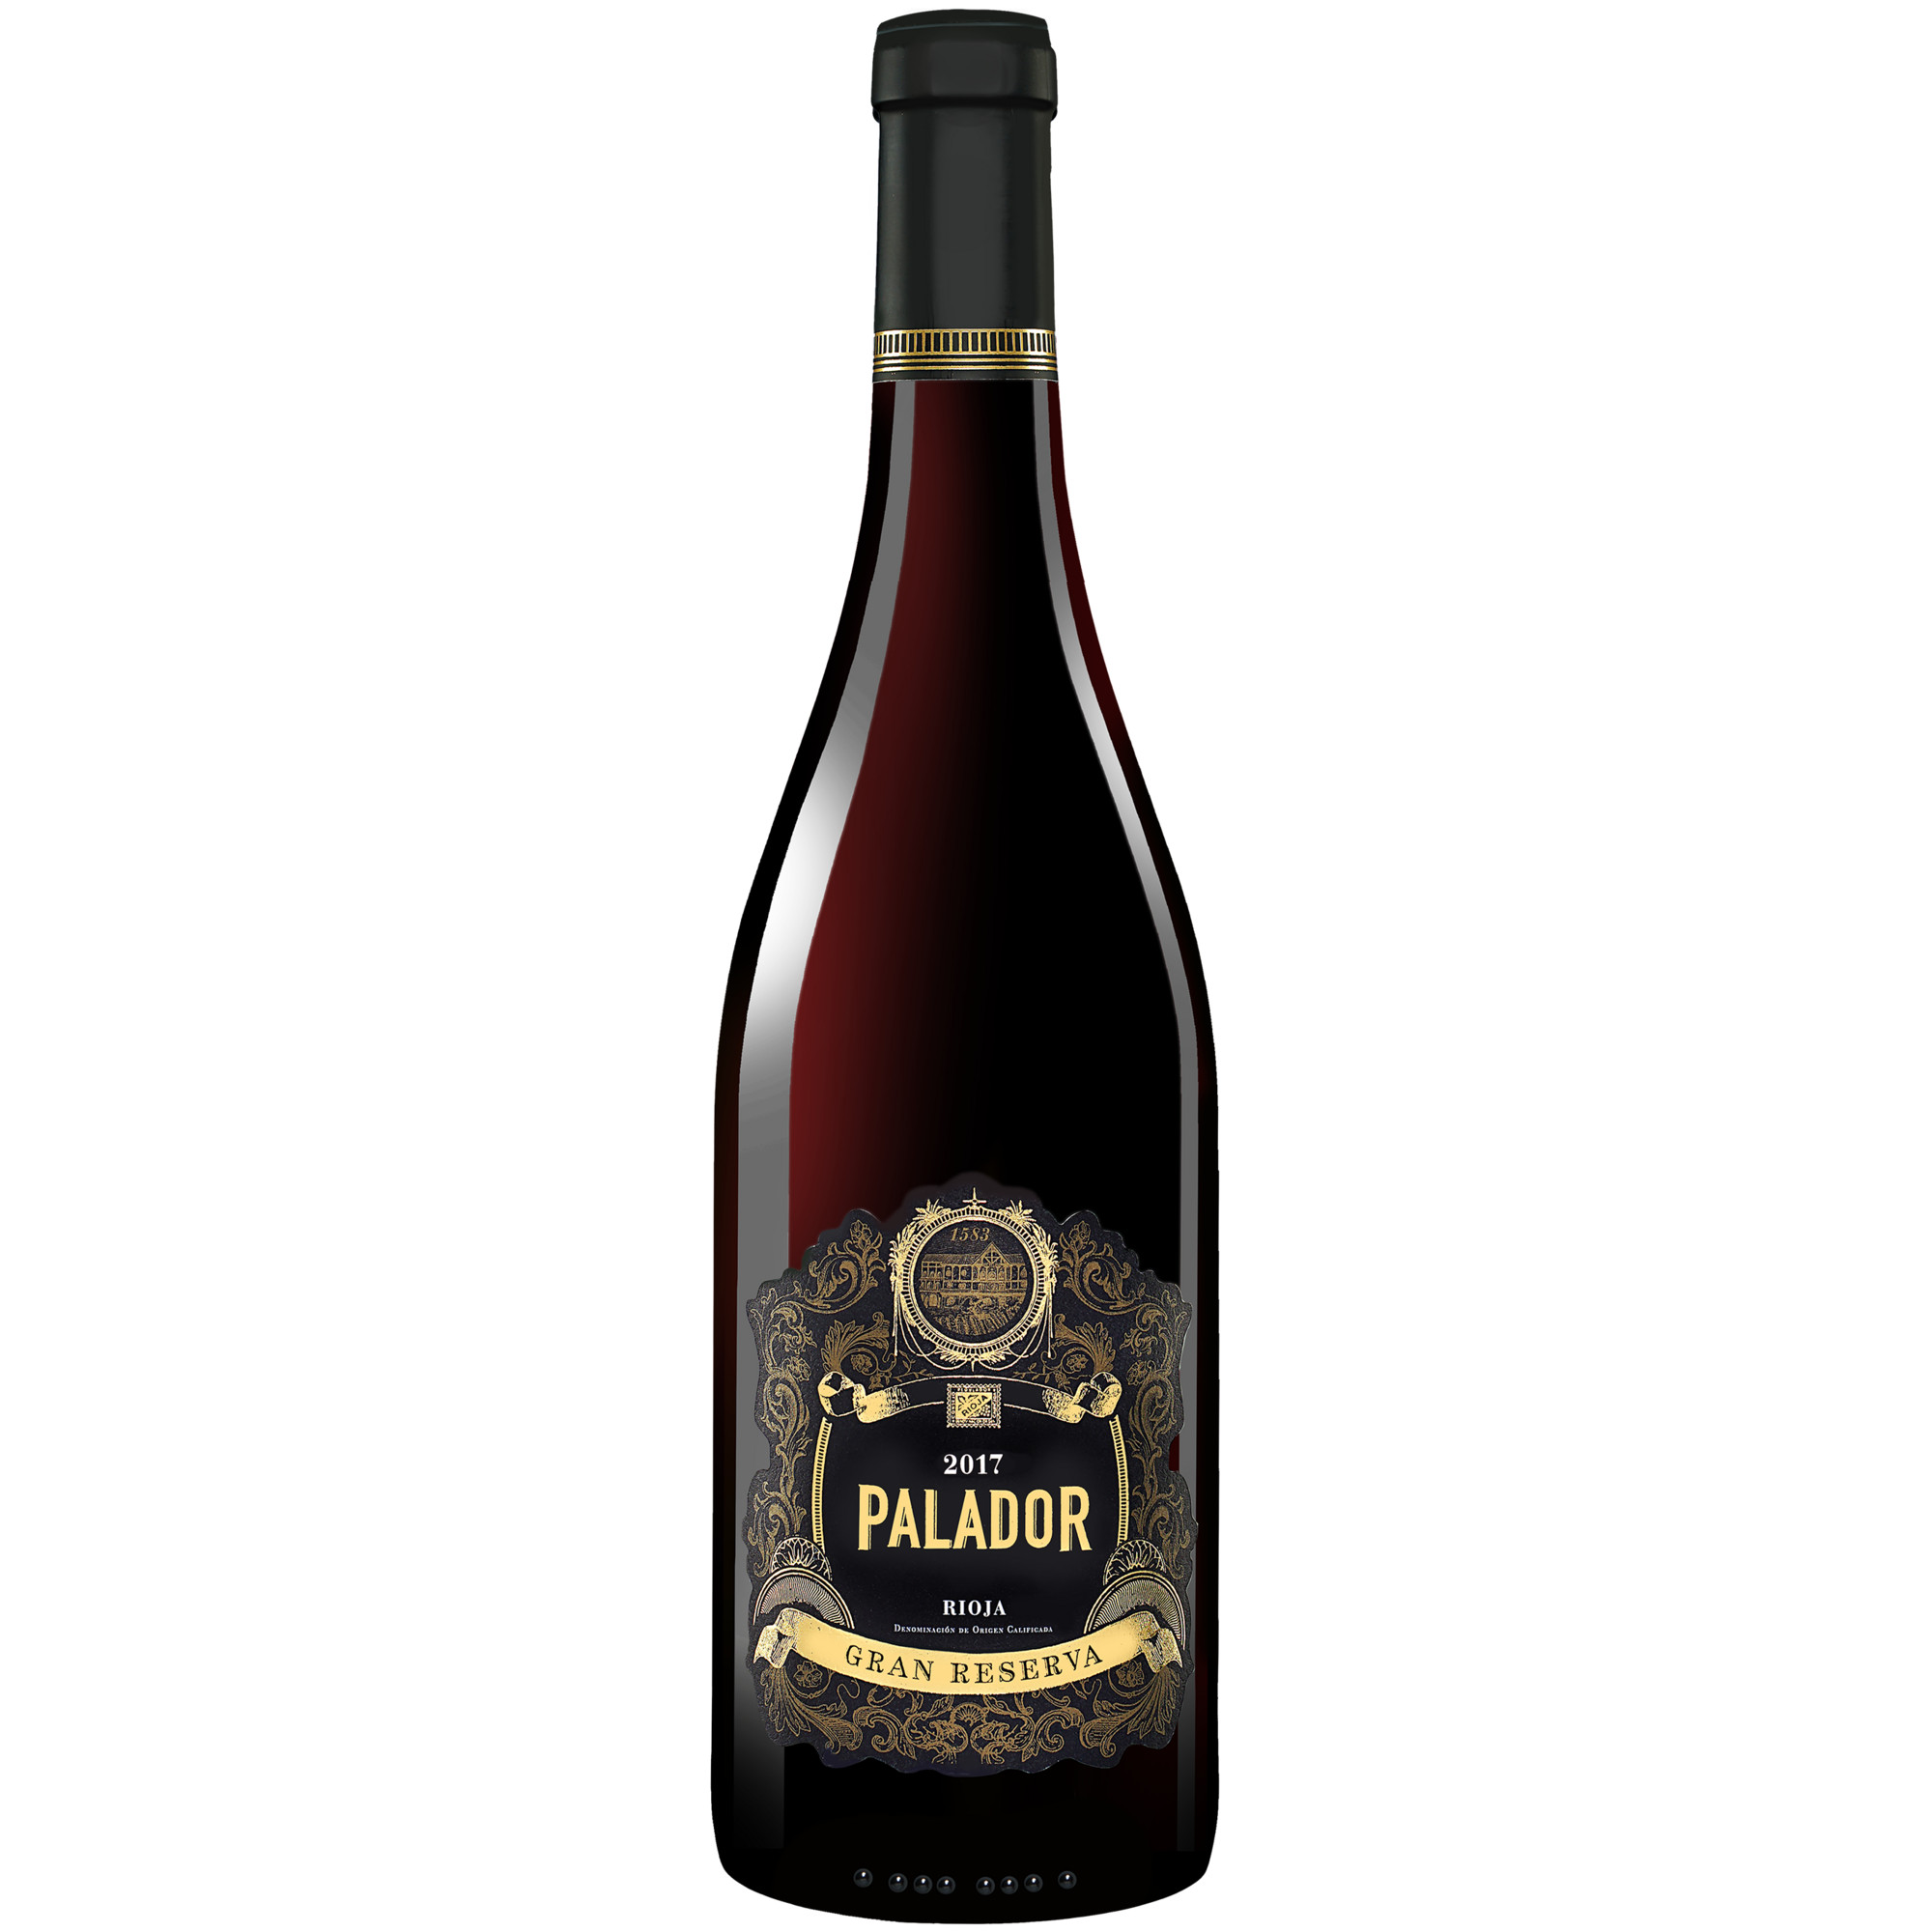 Palador Gran Reserva 2017  014.5% Vol. Rotwein Trocken aus Spanien